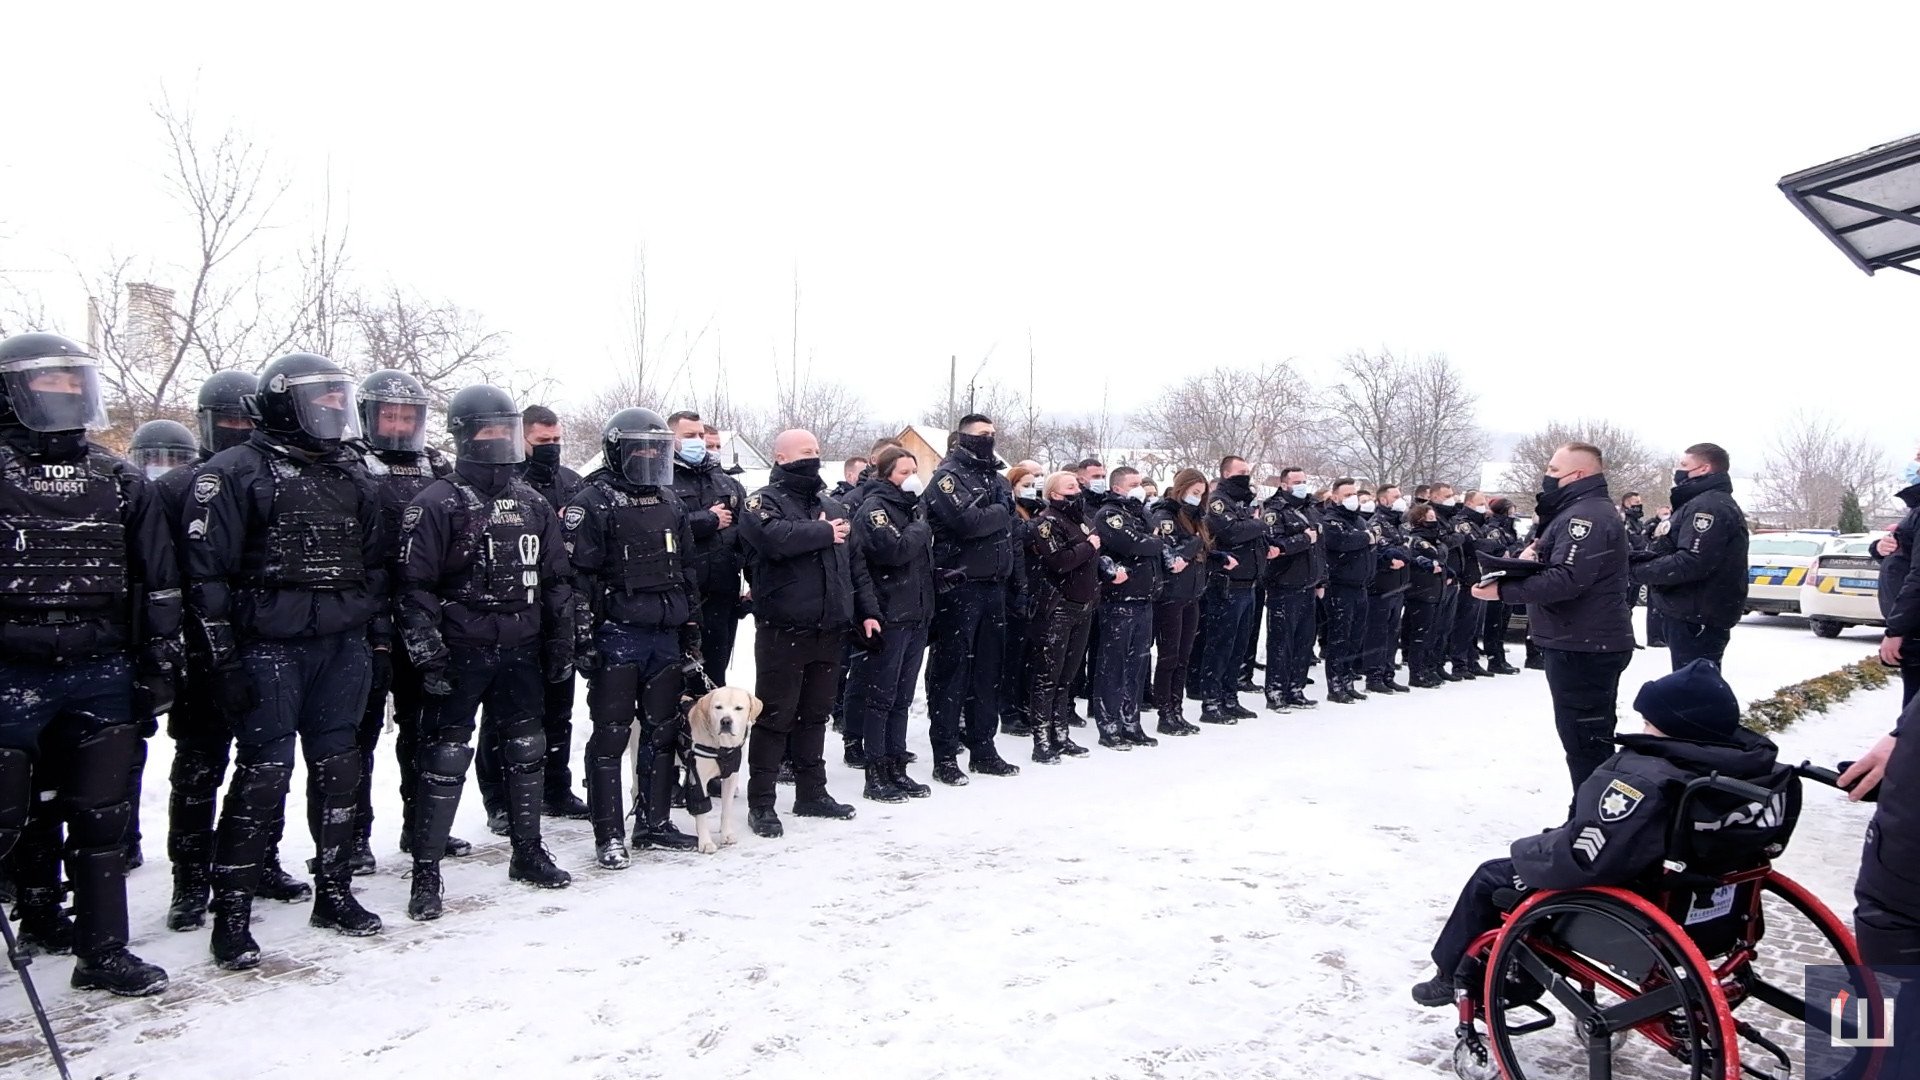 Осуществить заветную мечту: в Черновцах больного раком мальчика приняли в ряды полиции (ФОТО, ВИДЕО) - фото 4